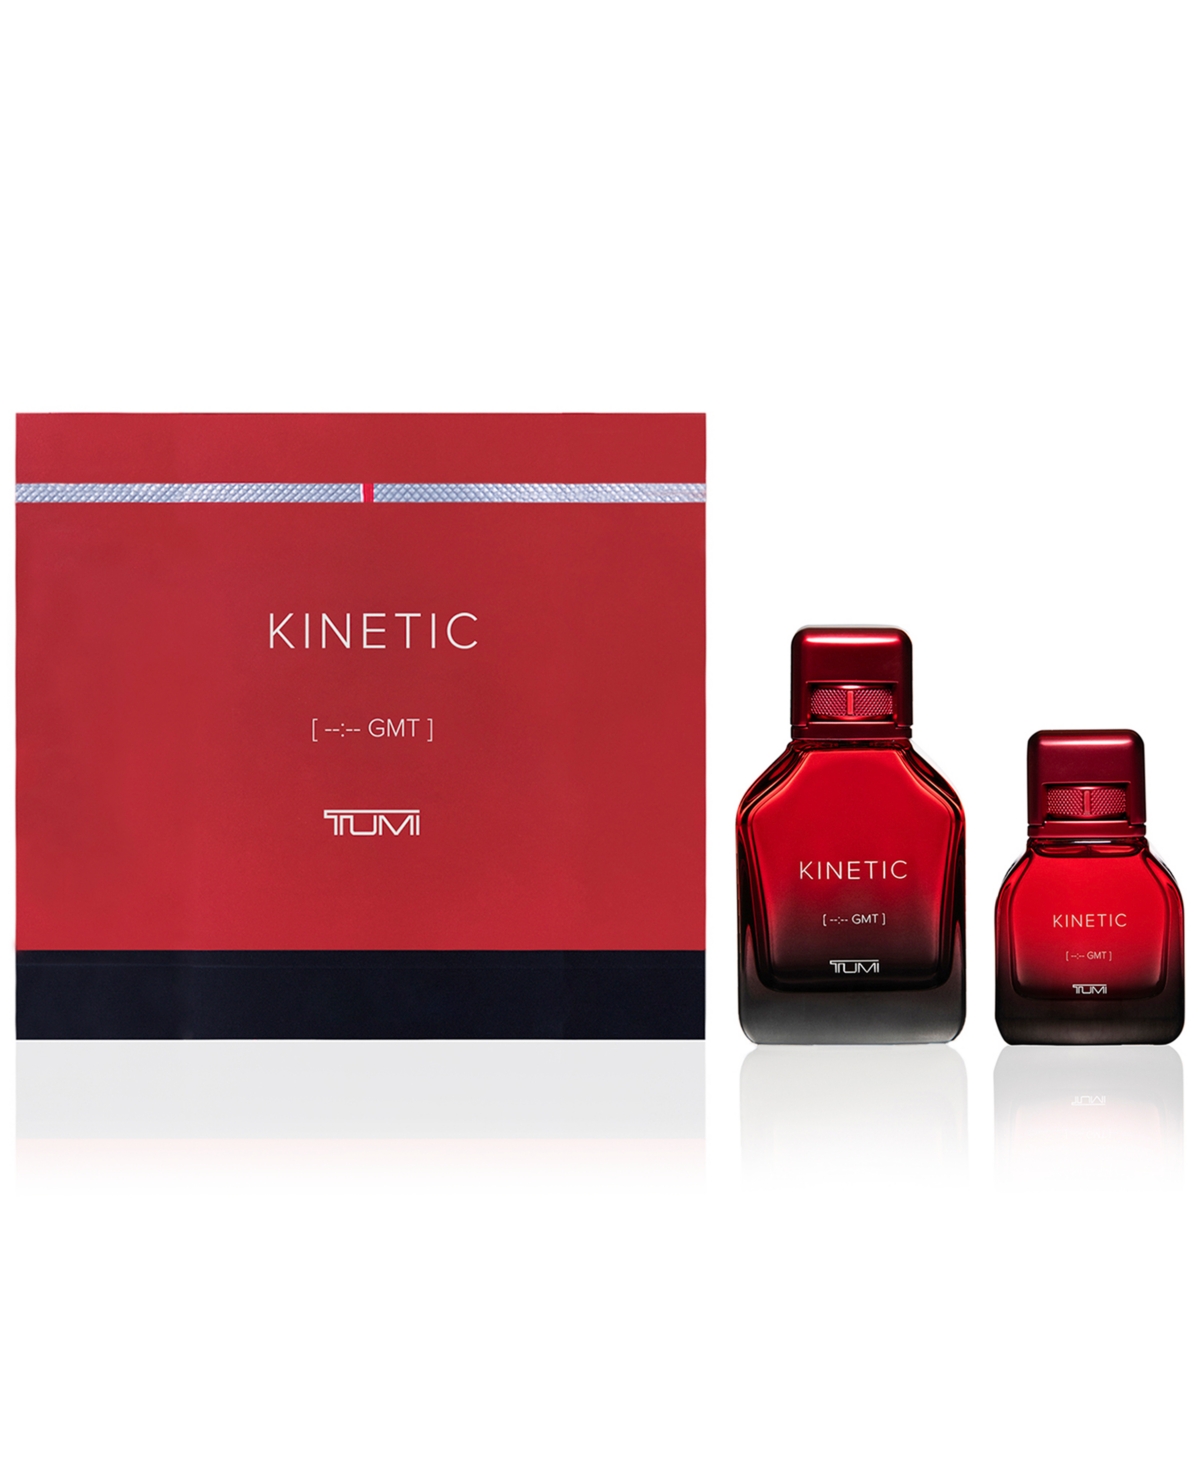 Men's 2-Pc. Kinetic [--:-- Gmt] Eau de Parfum Gift Set